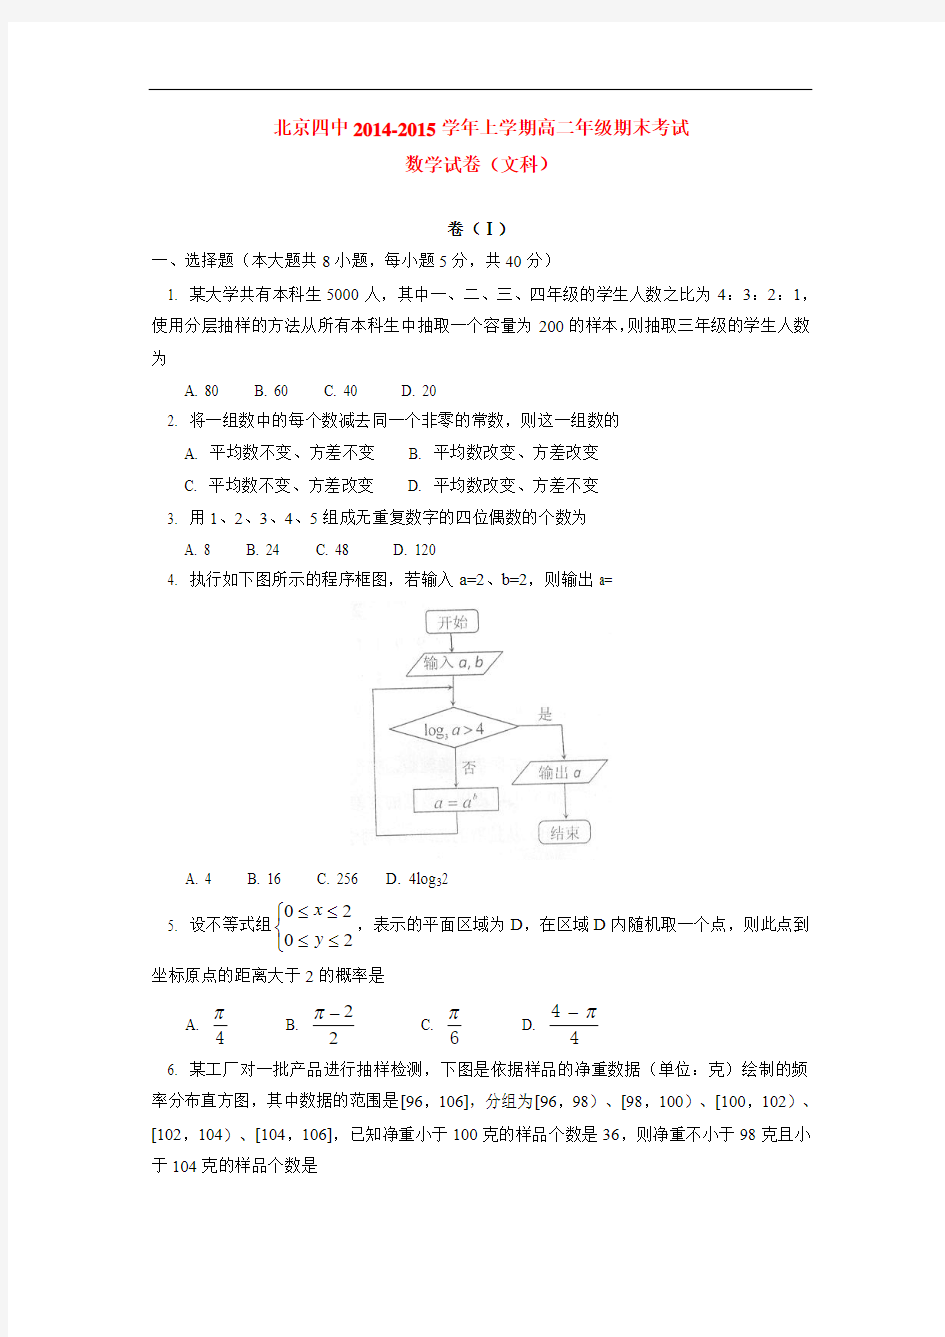 北京四中2014-2015学年上学期高二年级期末考试数学试卷(文科)  后有答案